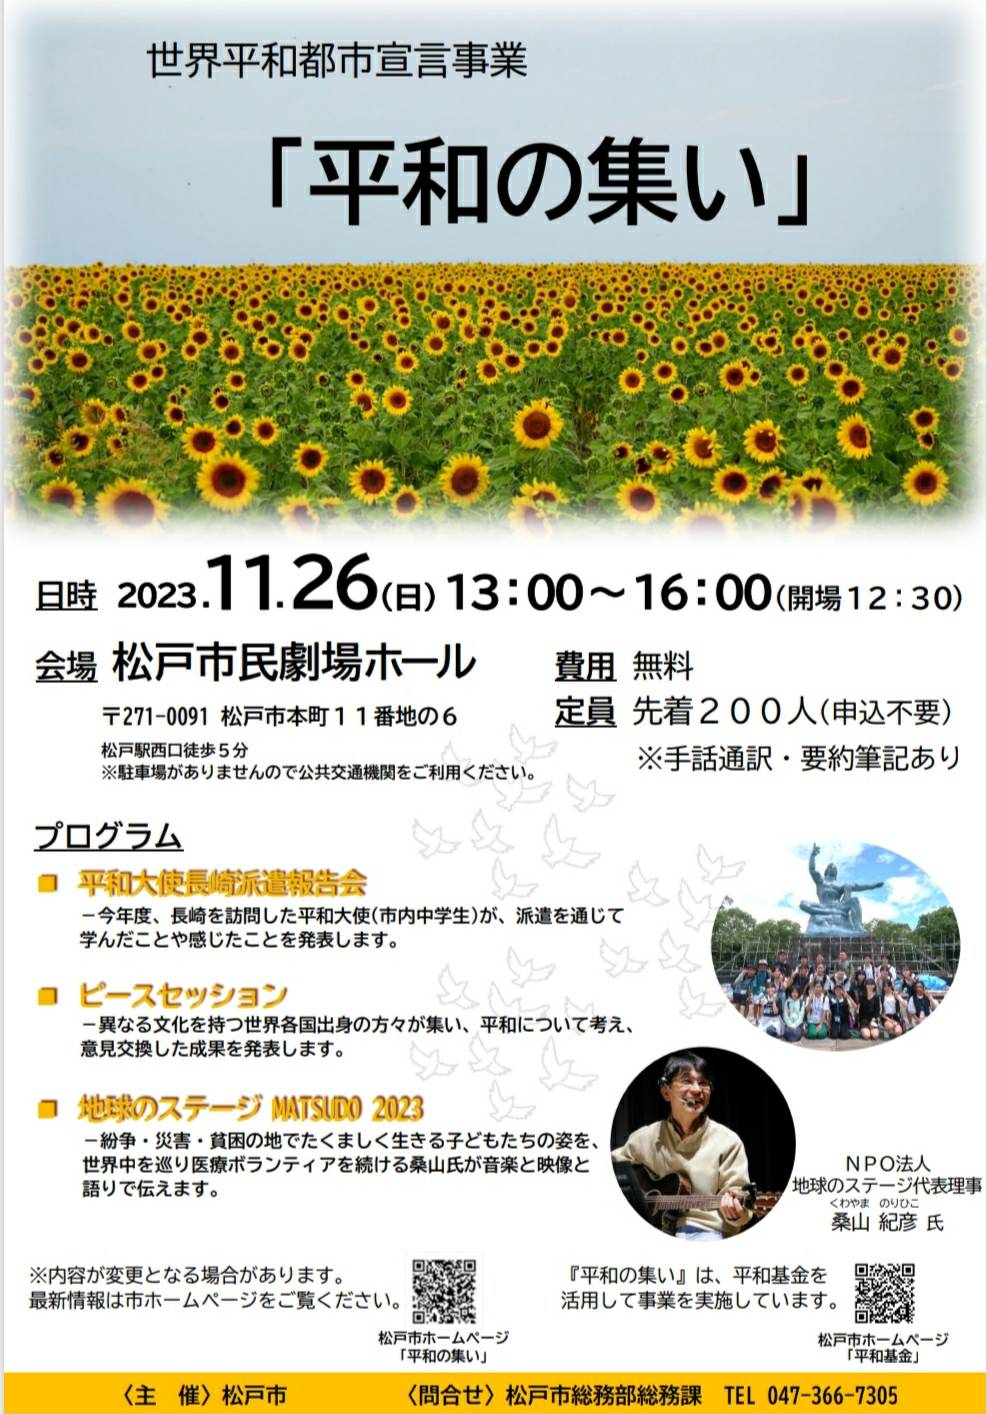 松戸市 世界平和都市宣言事業平和の集い2023年松戸市民劇場